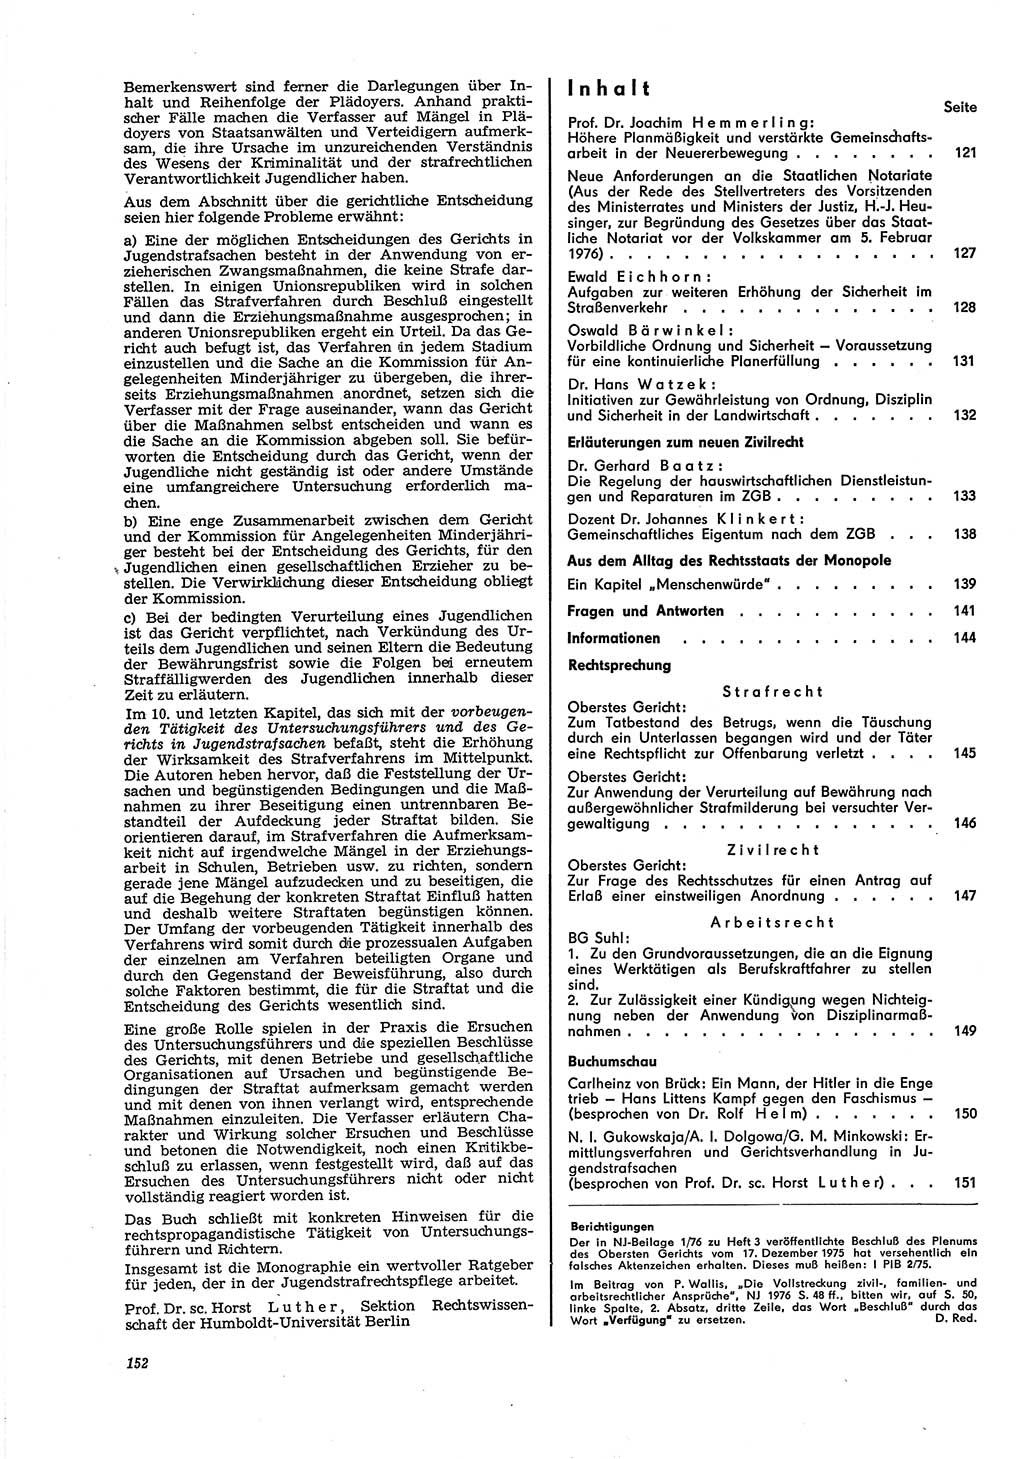 Neue Justiz (NJ), Zeitschrift für Recht und Rechtswissenschaft [Deutsche Demokratische Republik (DDR)], 30. Jahrgang 1976, Seite 152 (NJ DDR 1976, S. 152)